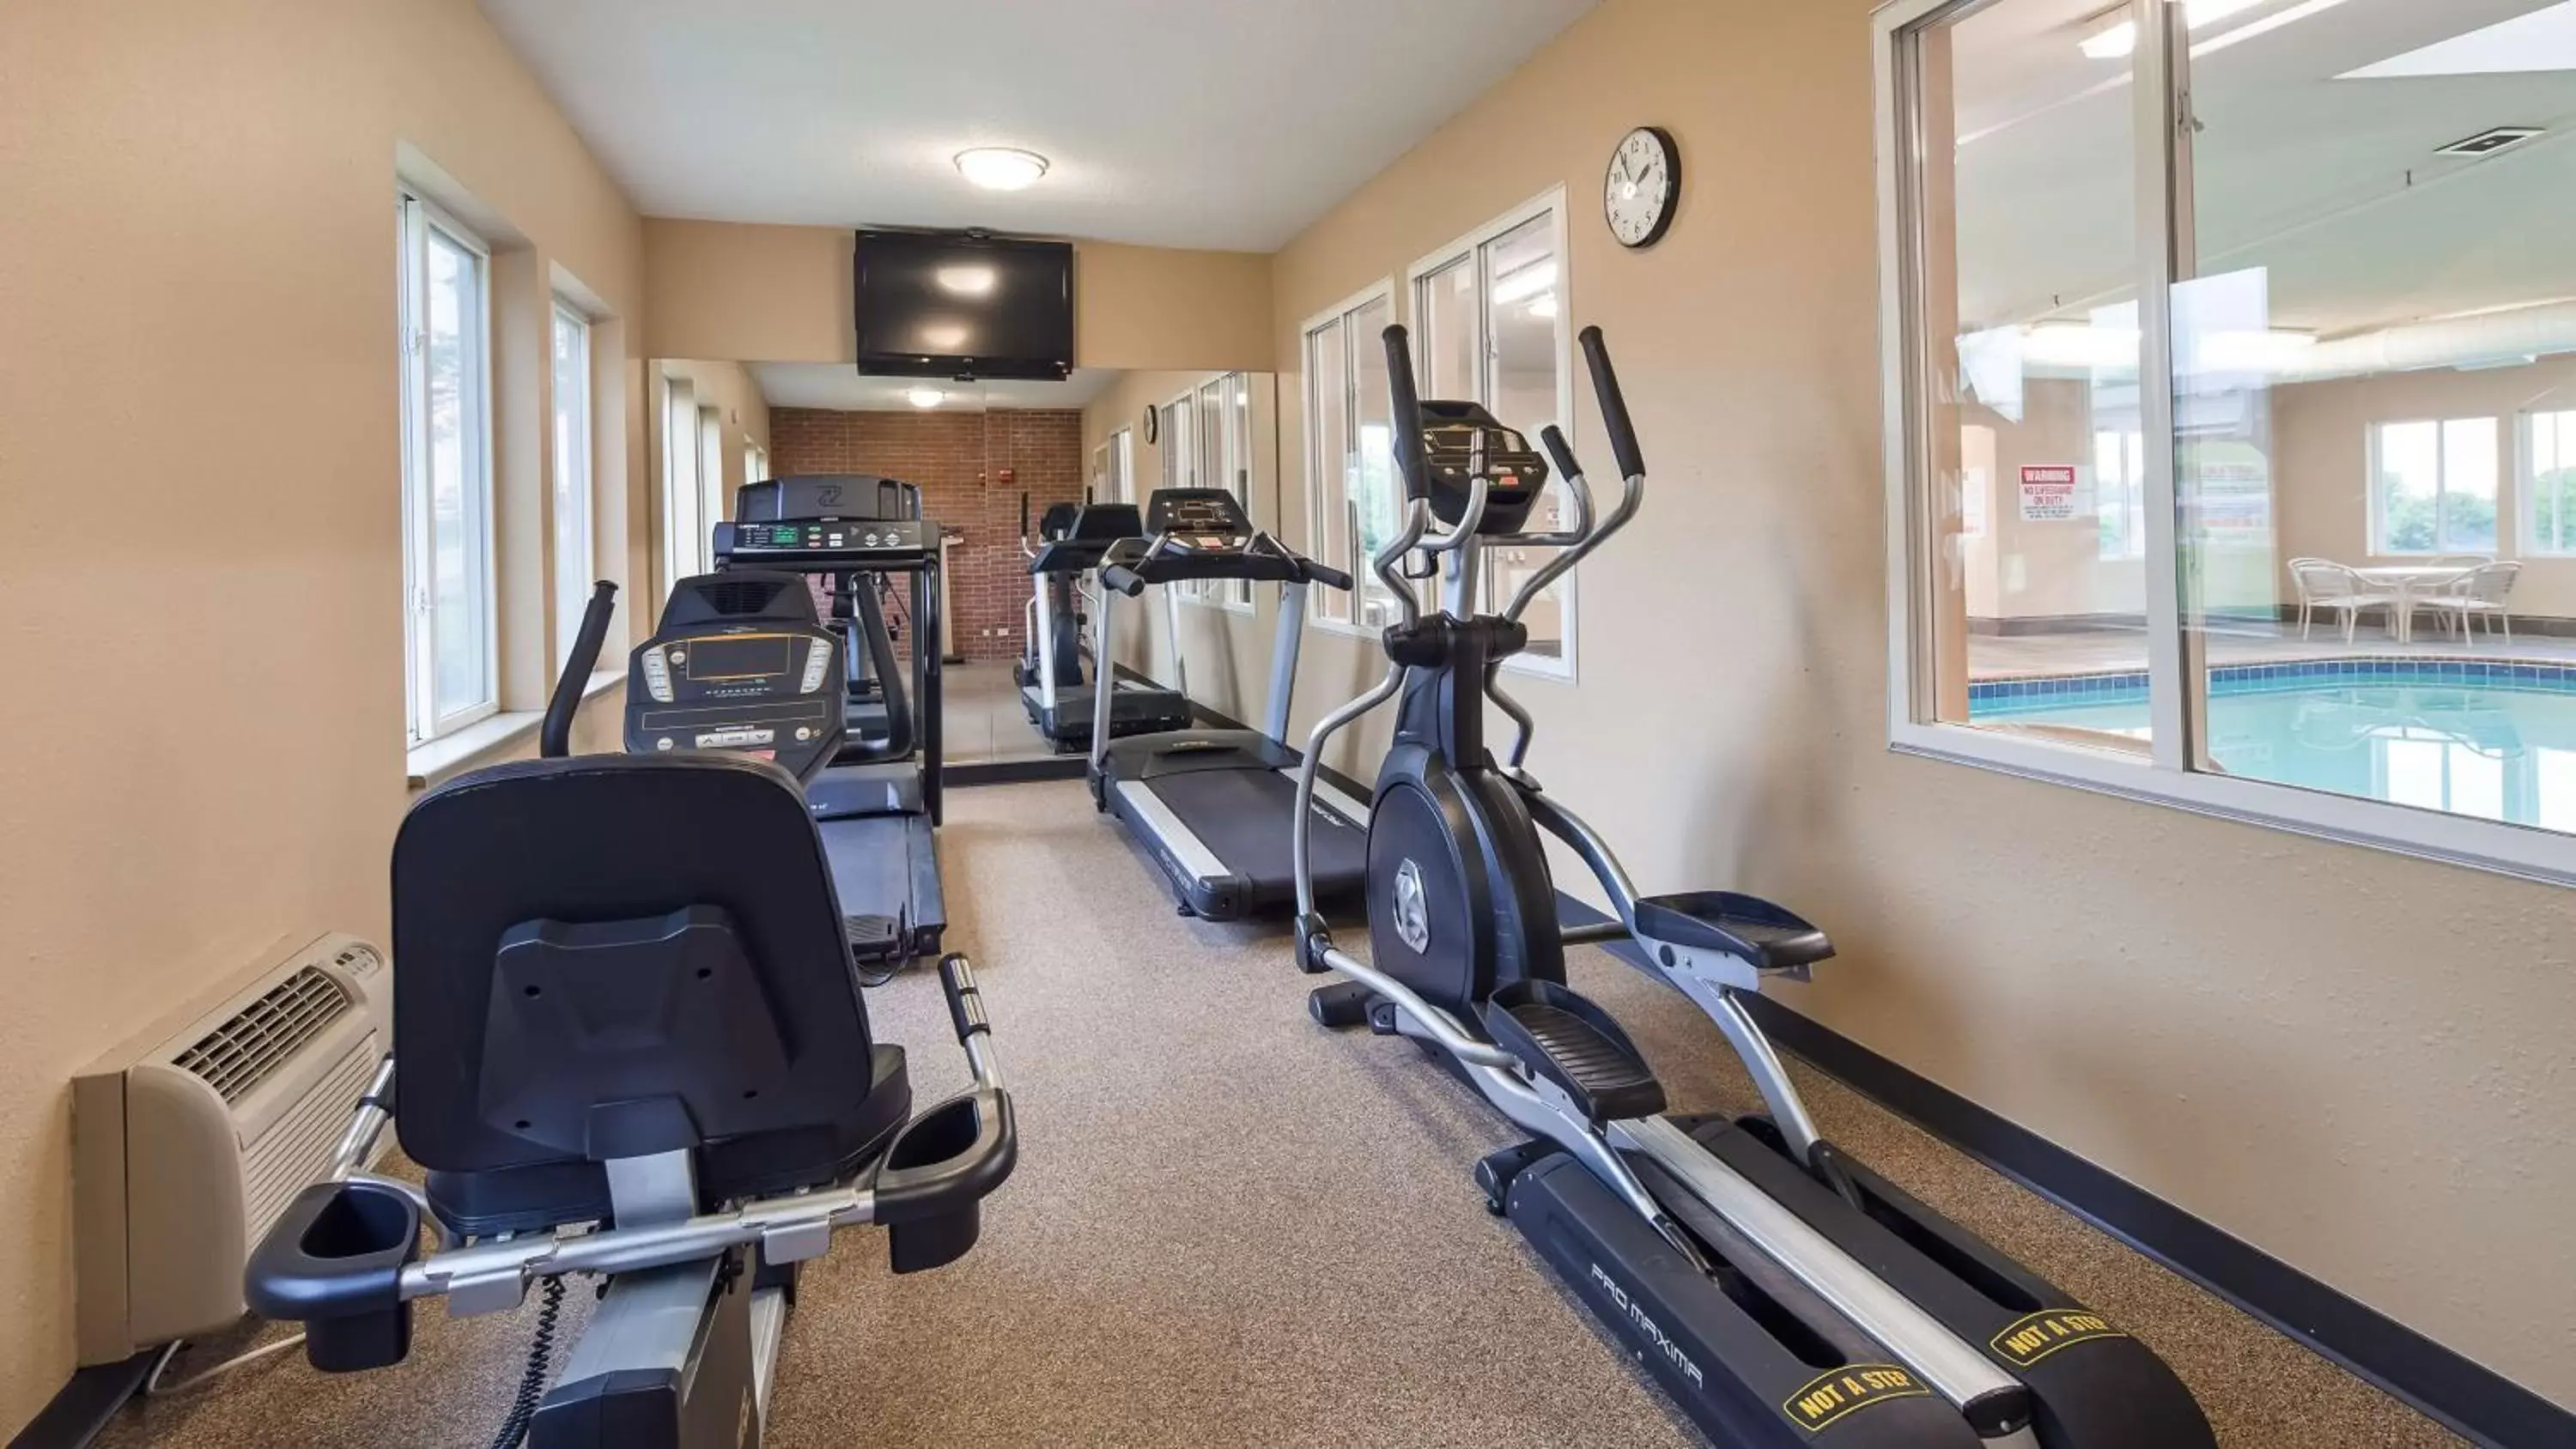 Fitness centre/facilities, Fitness Center/Facilities in Best Western Nebraska City Inn